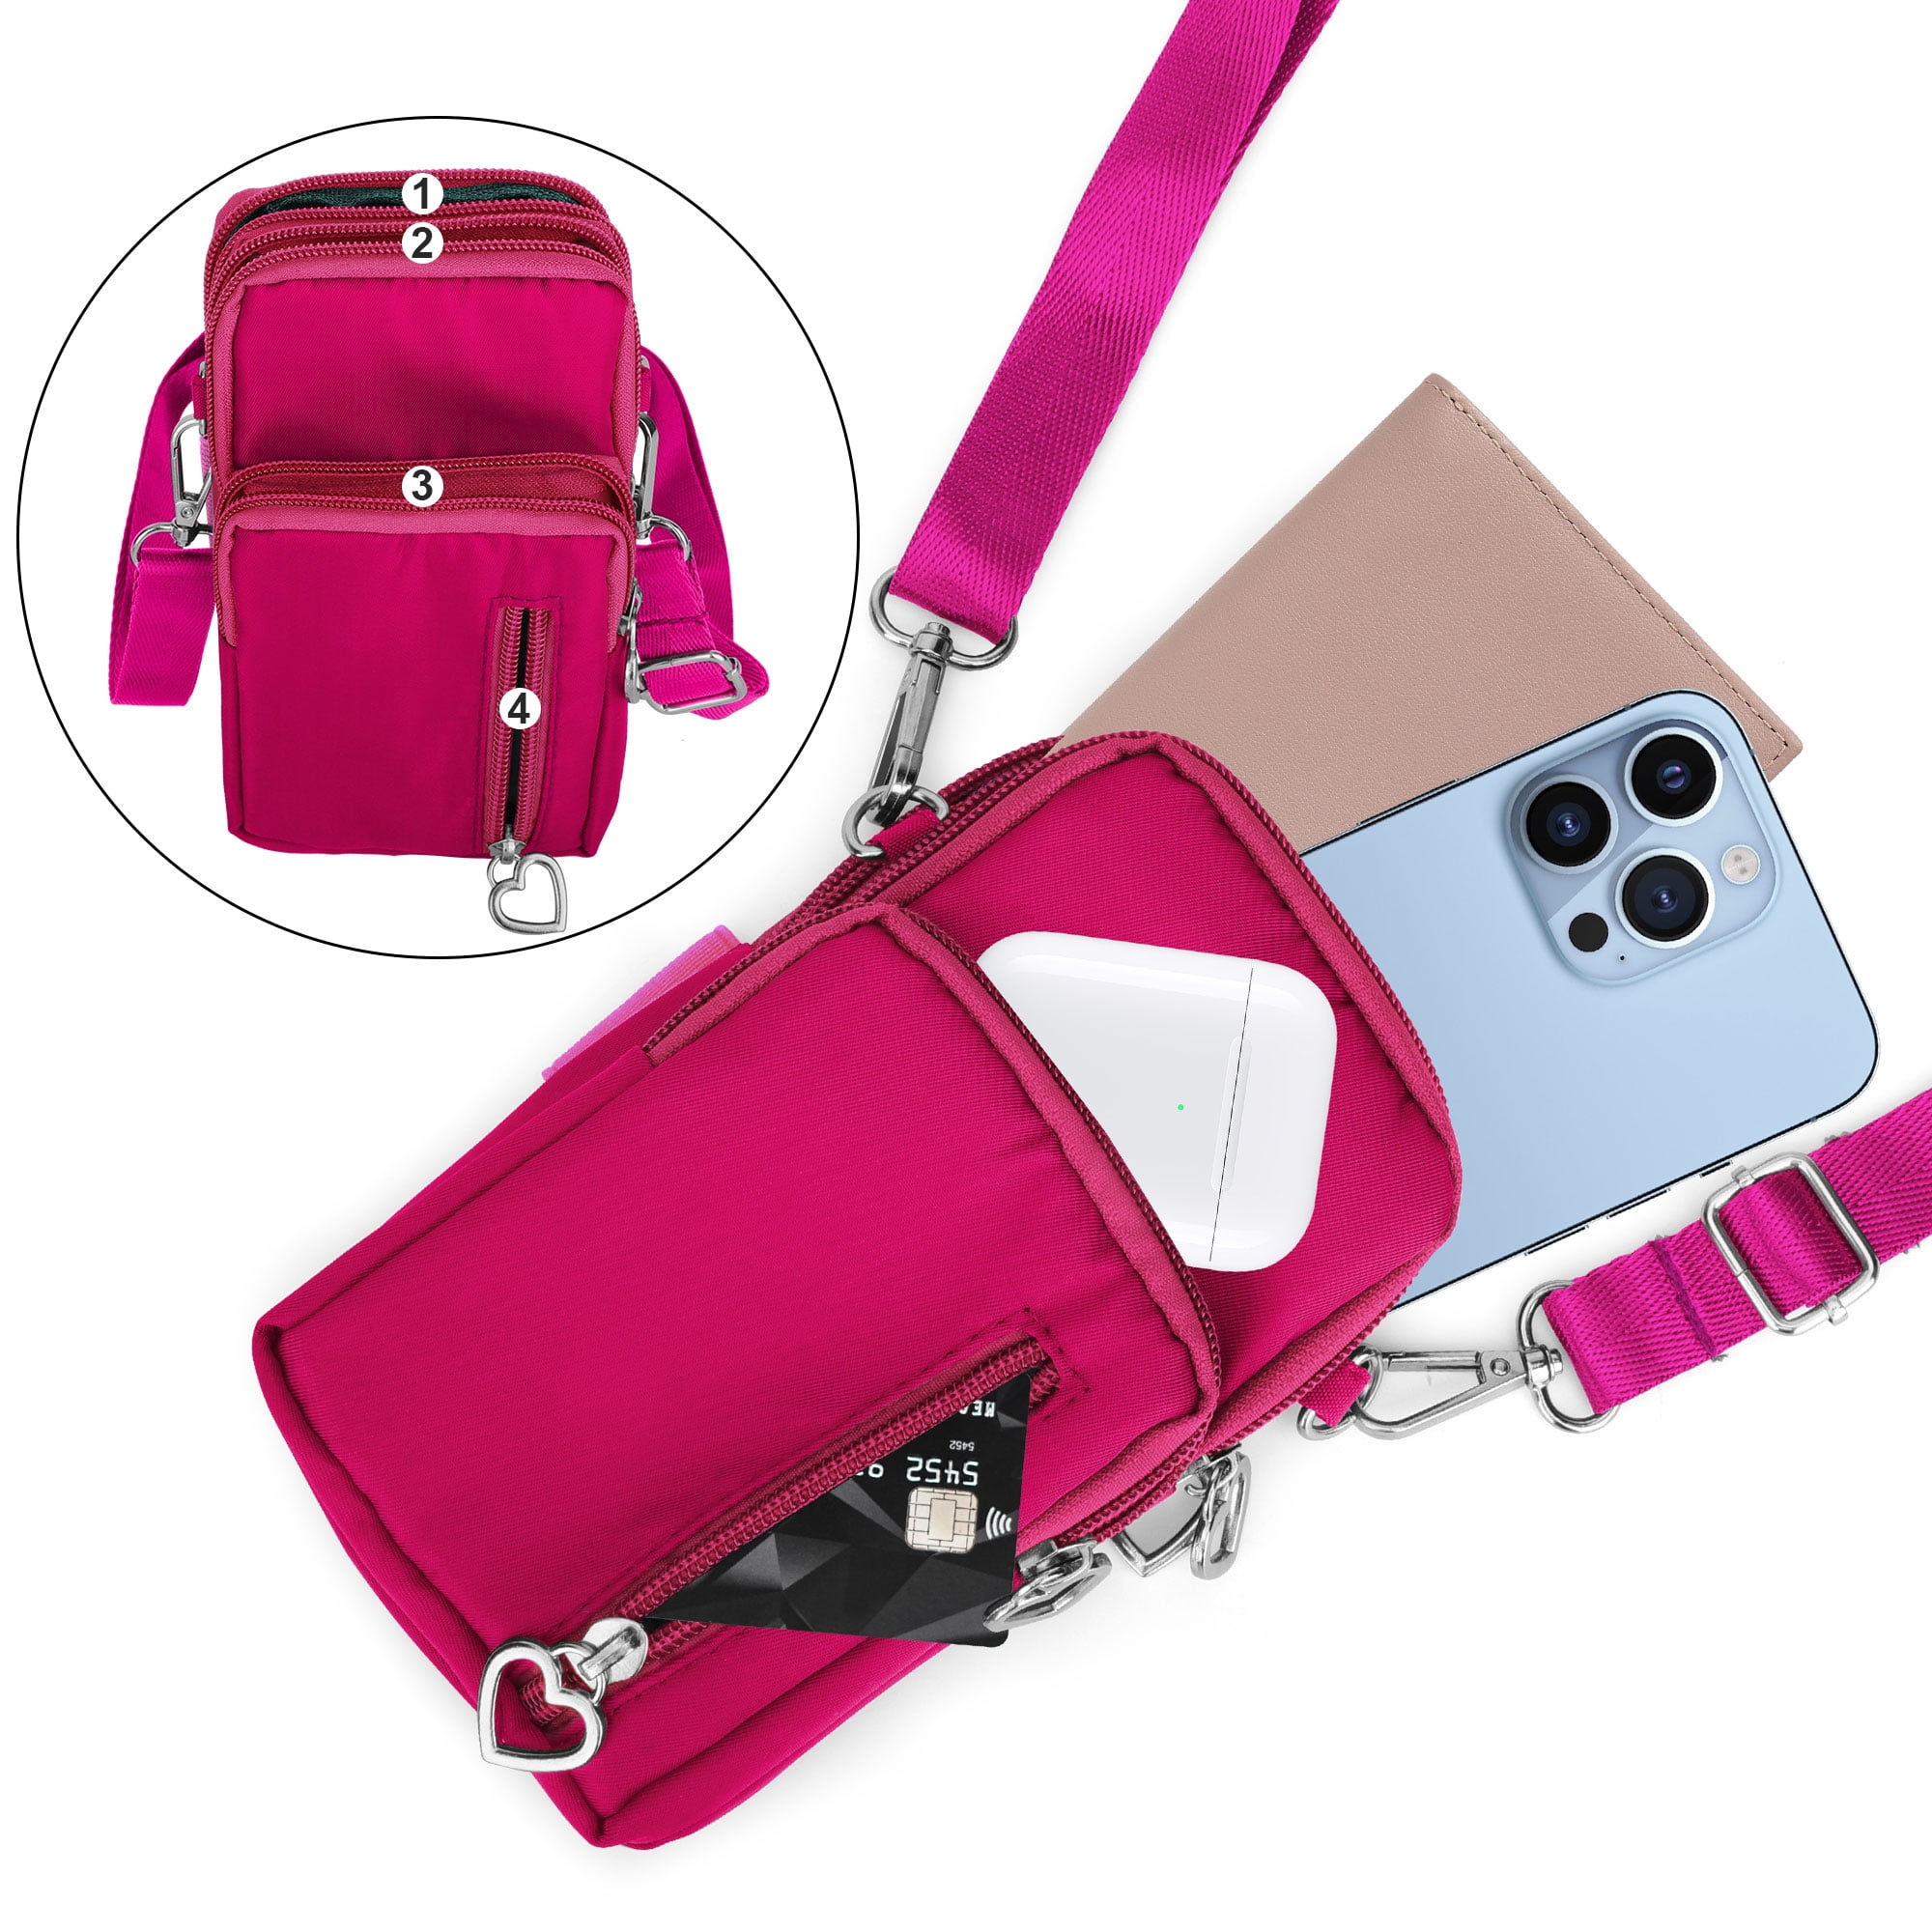 Buy Kraptick Phone Sling Bag for Women - Phone Holder Sling Bag, Phone  Crossbody Case, HPhone holder sling bag (Black) at Amazon.in